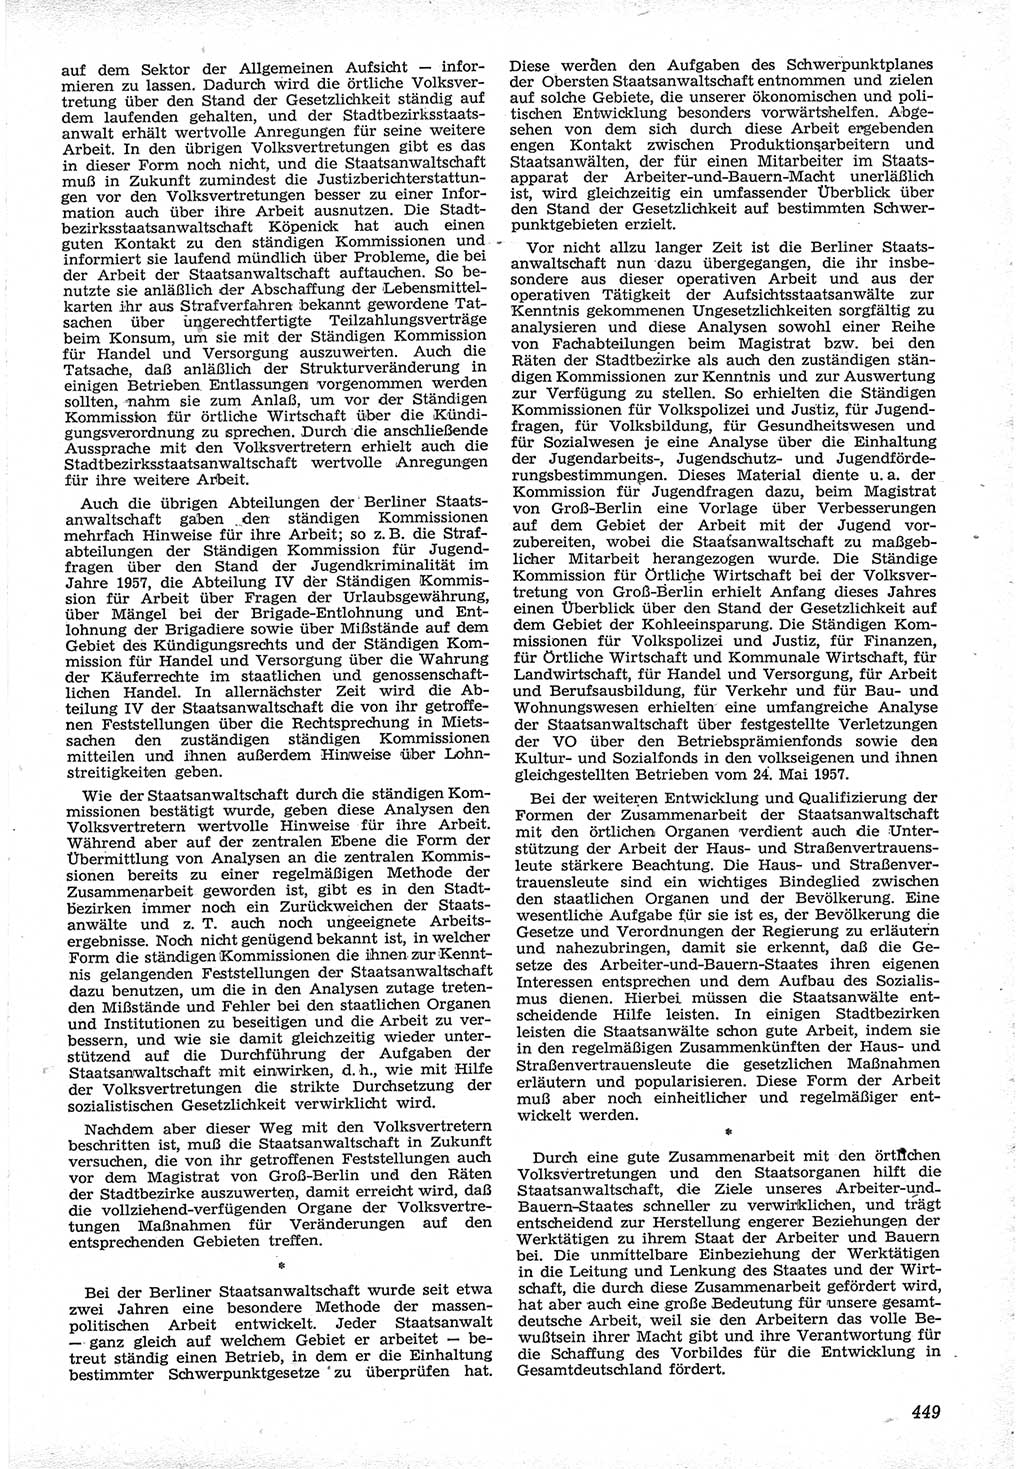 Neue Justiz (NJ), Zeitschrift für Recht und Rechtswissenschaft [Deutsche Demokratische Republik (DDR)], 12. Jahrgang 1958, Seite 449 (NJ DDR 1958, S. 449)